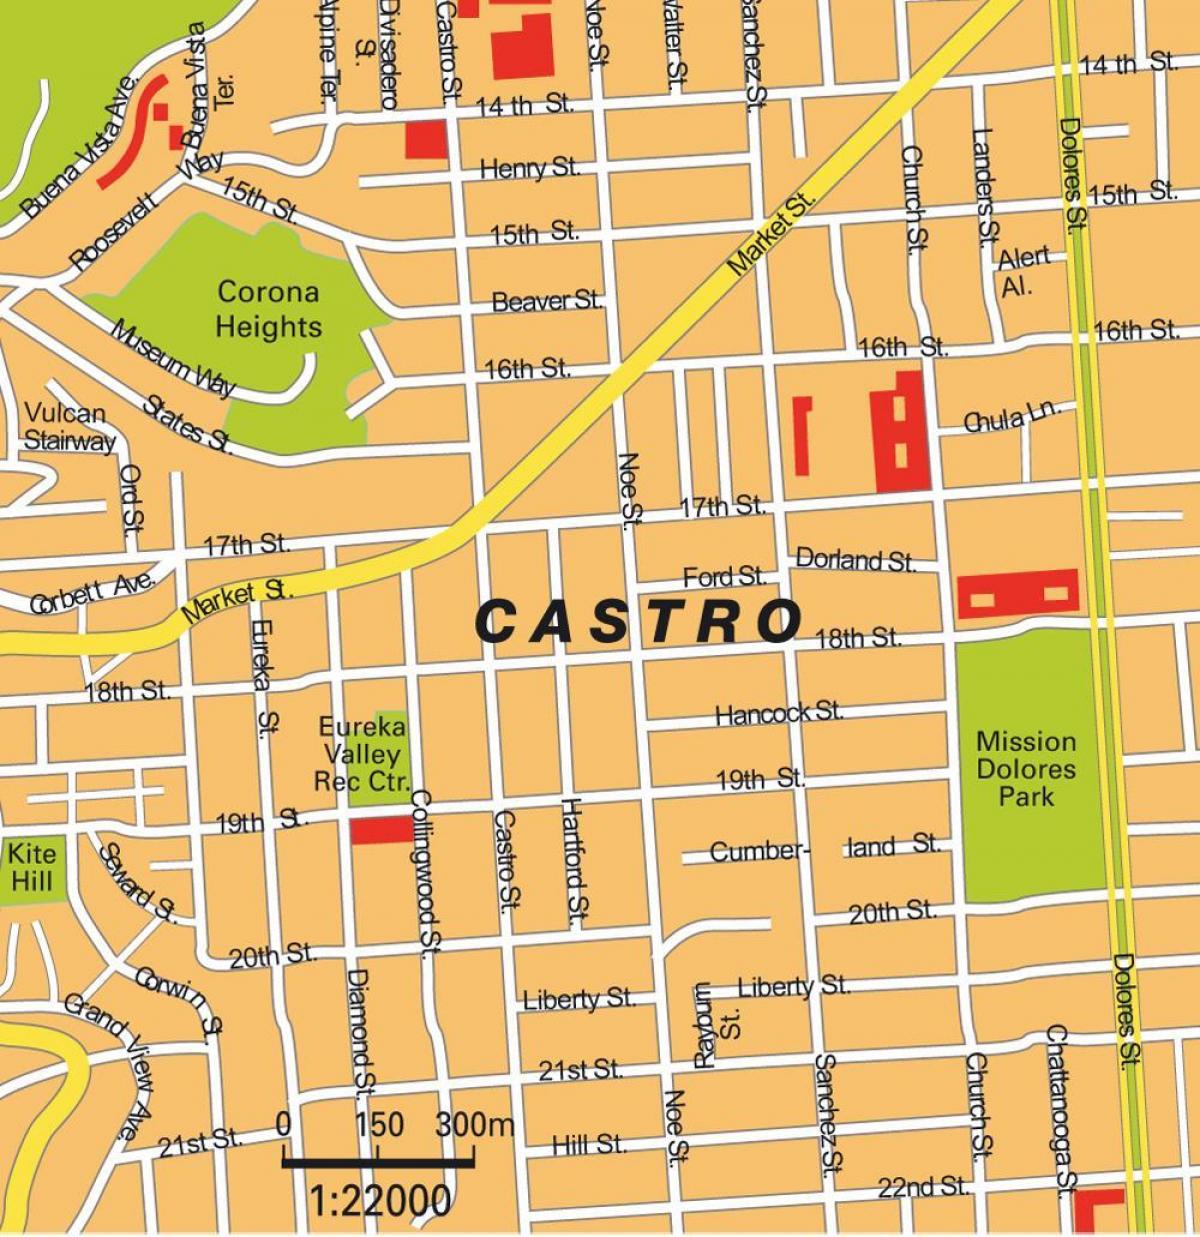 Карта На Кастро-Сан Франциско